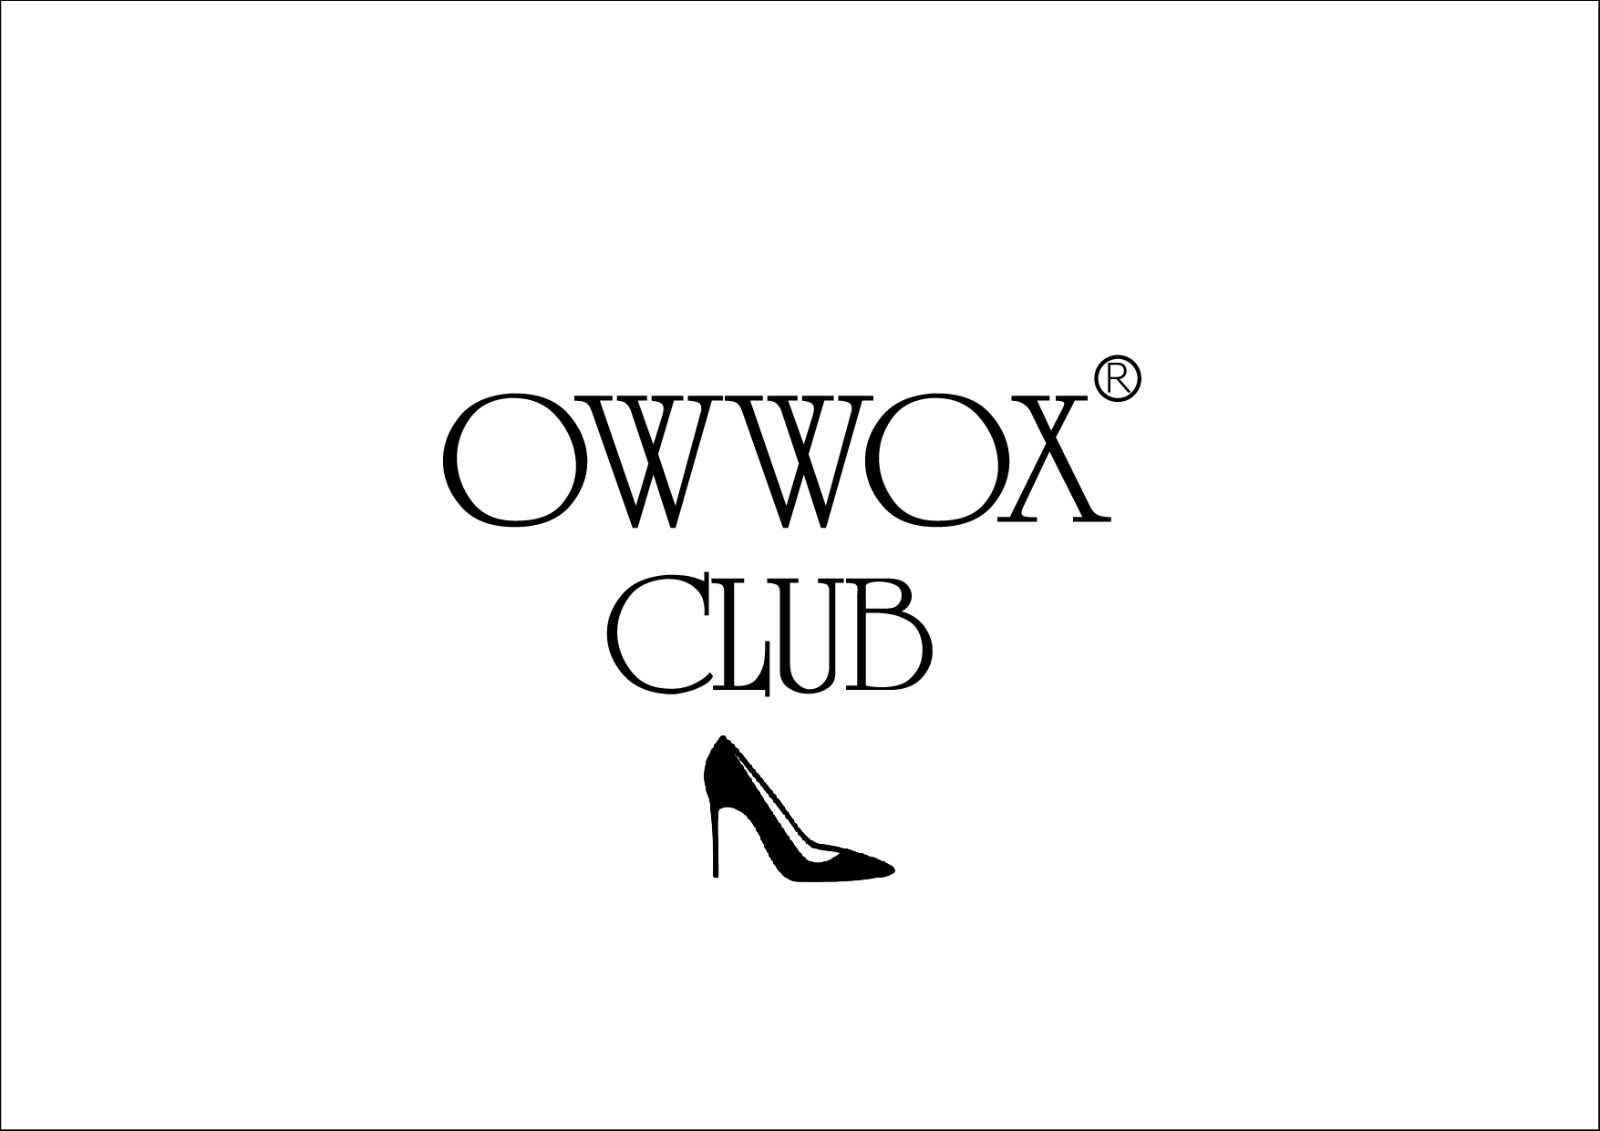 OWWOX CLUB